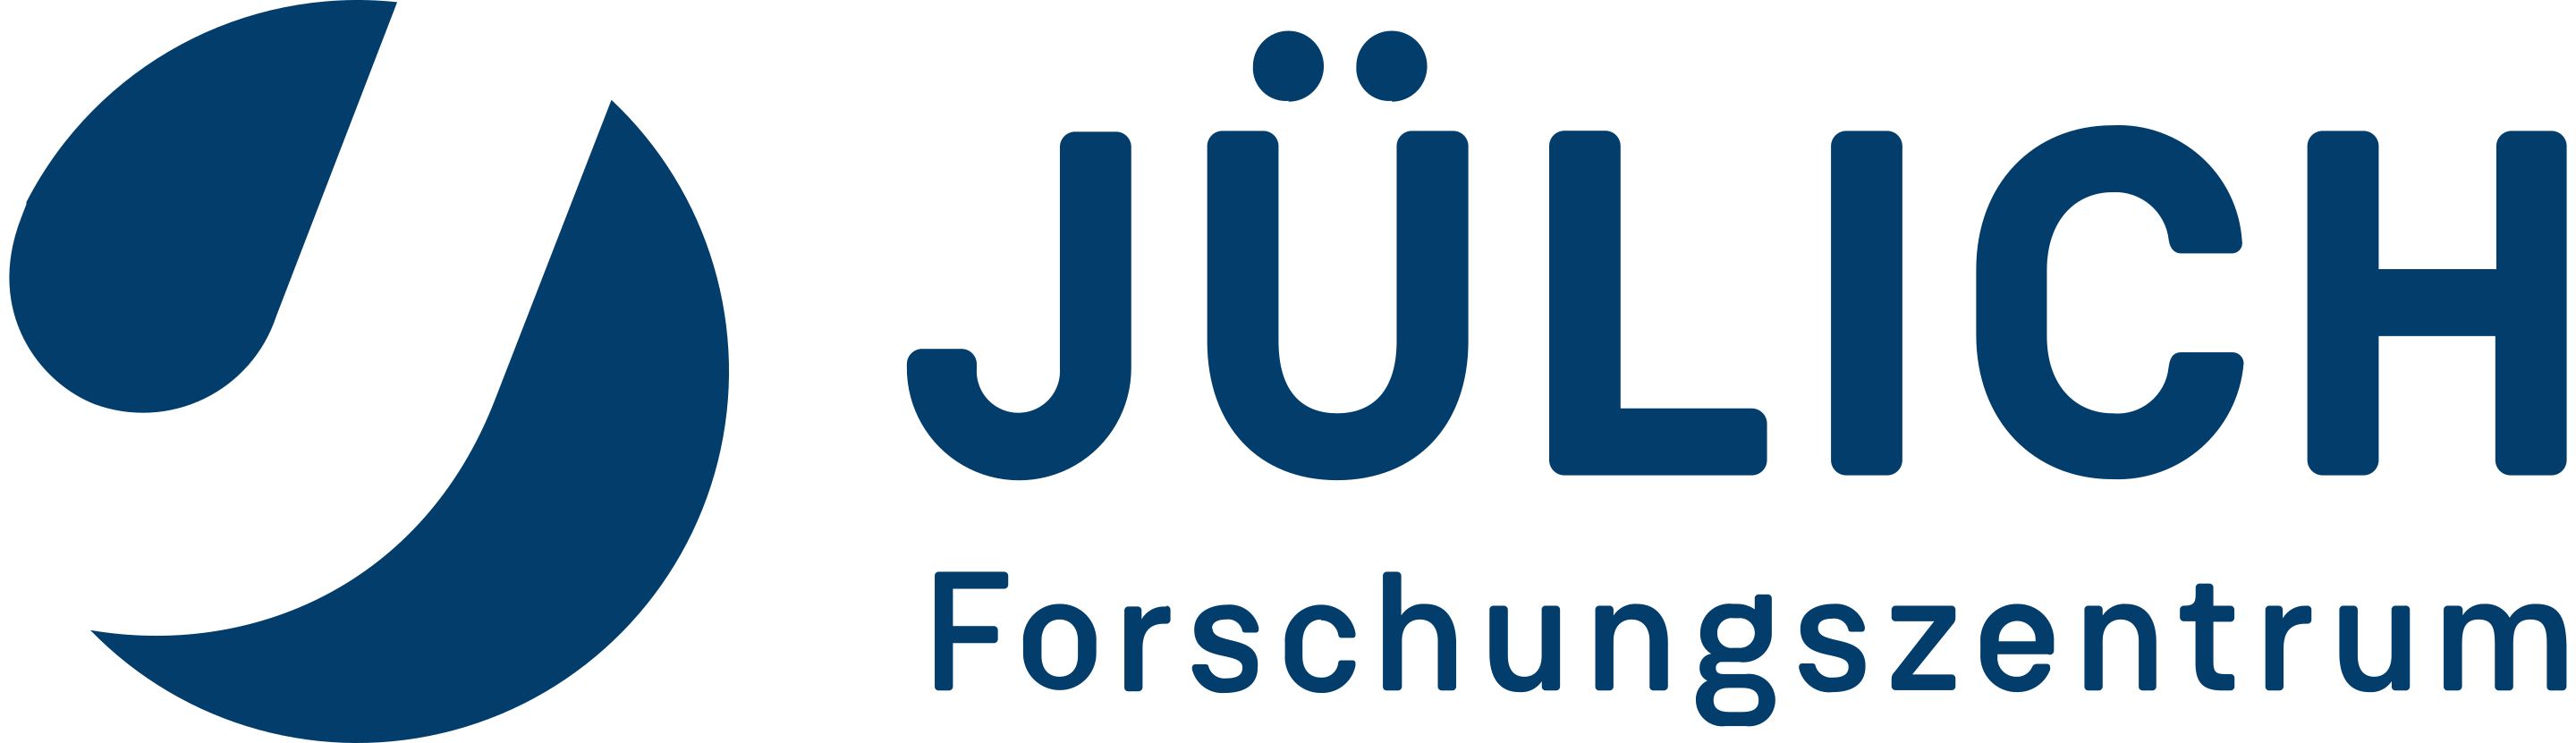 FZJ - Forschungszentrum Jülich GmbH - Юлихский исследовательский центр - Julich Supercomputing Centre - Суперкомпьютерный центр Юлих